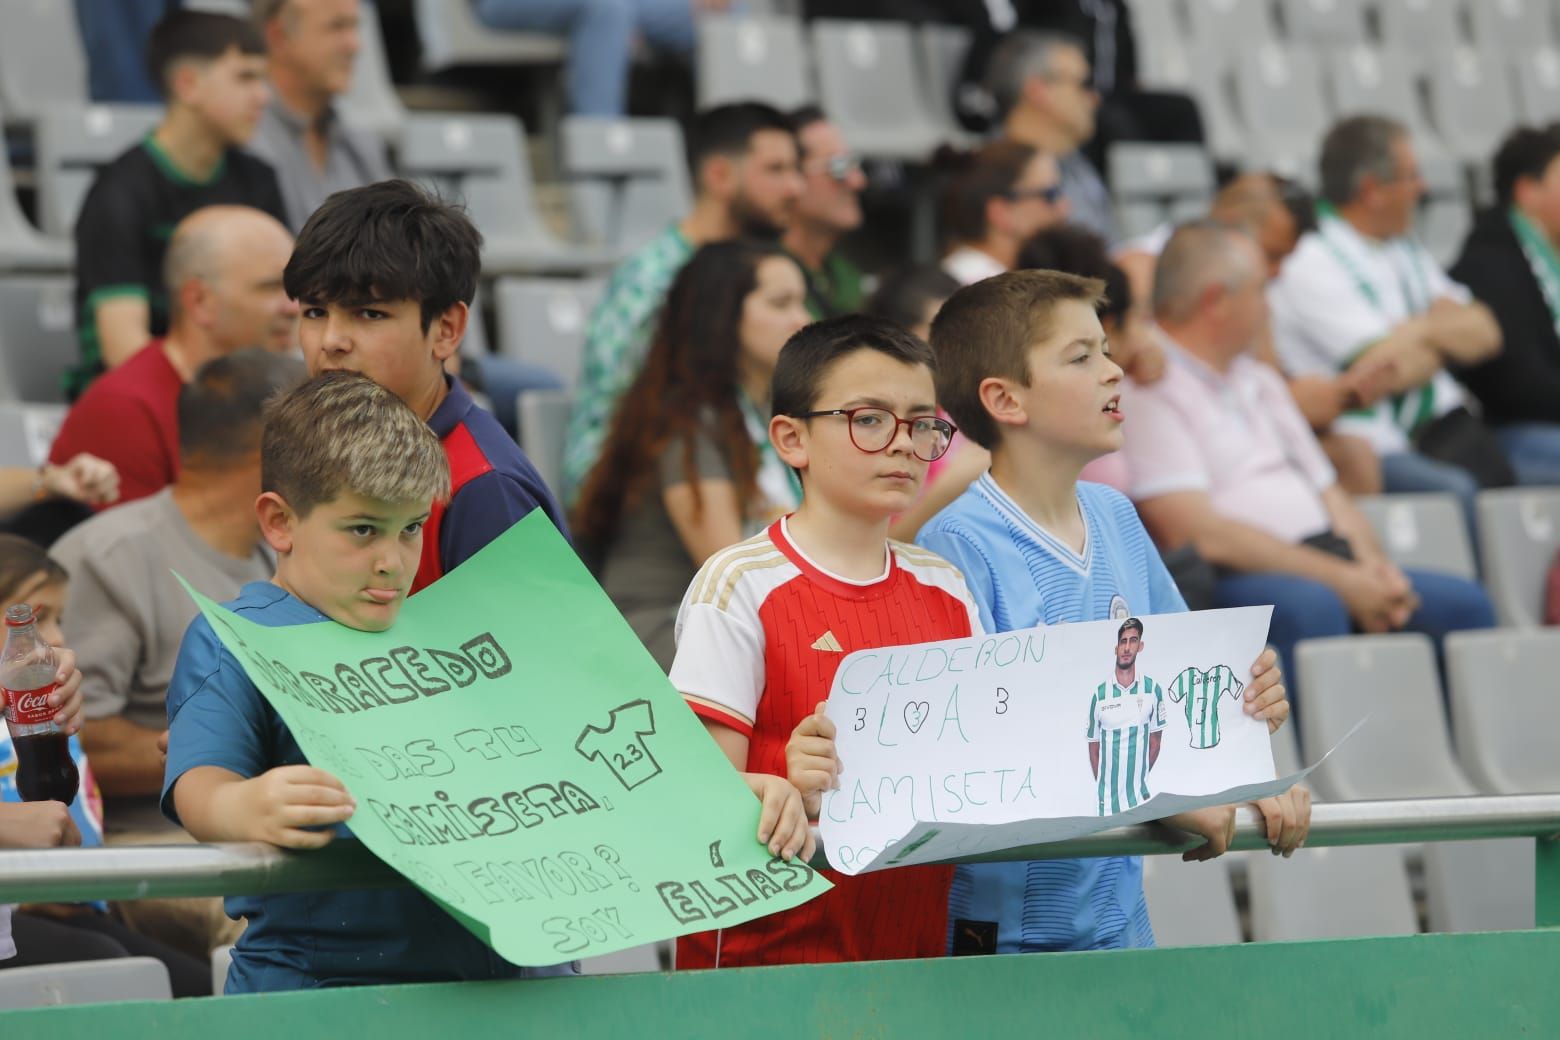 Córdoba CF-San Fernando: las imágenes de la afición en El Arcángel